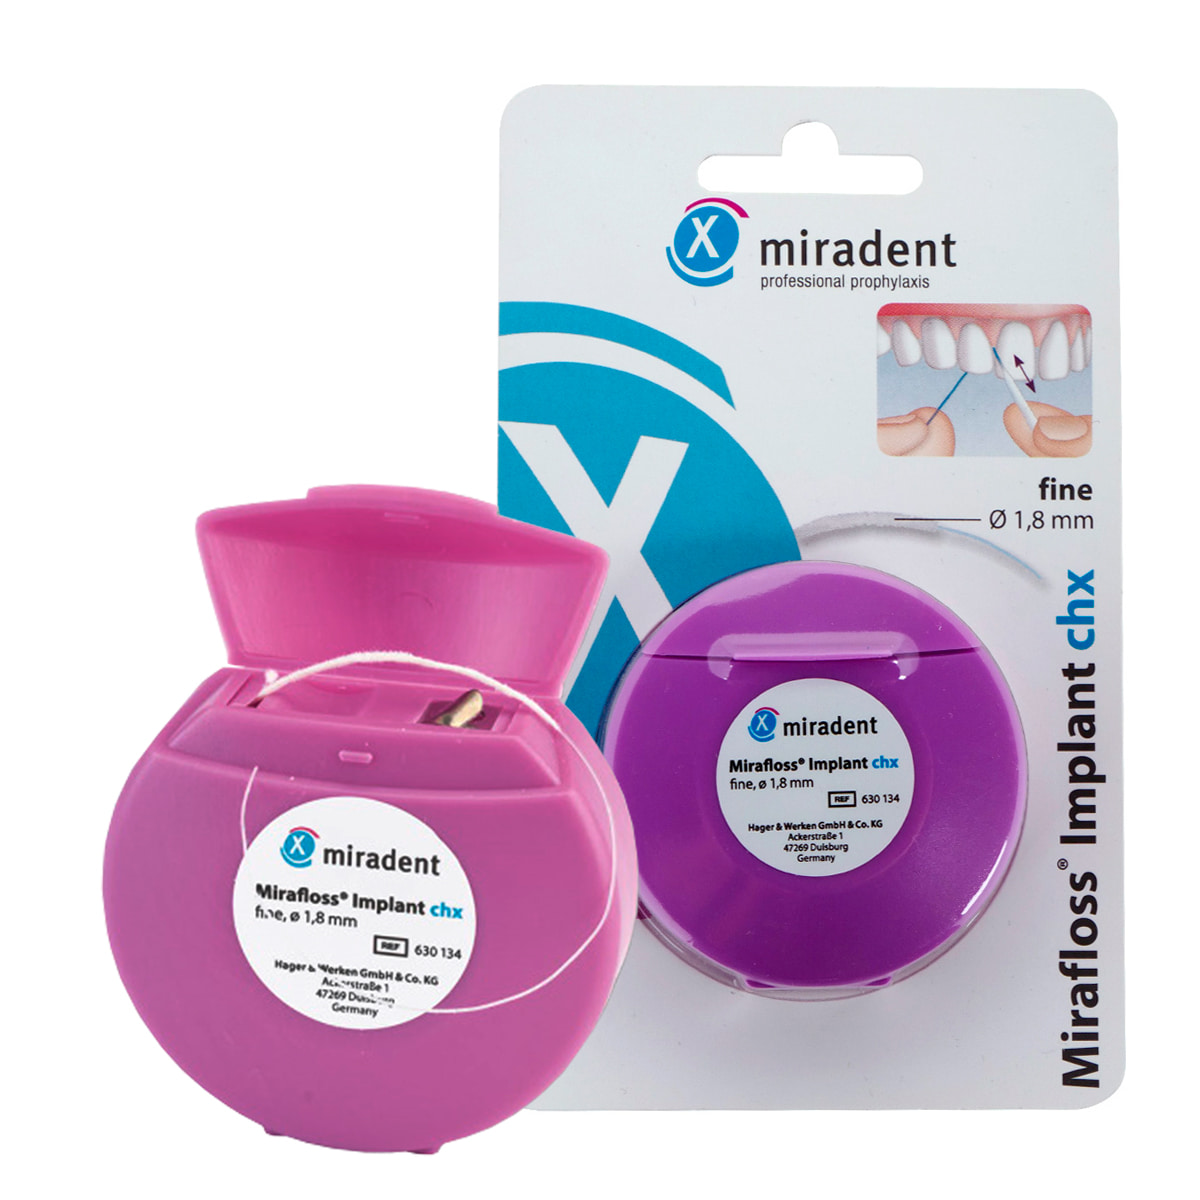 Зубная нить miradent Mirafloss Implant chx 1,8 мм для имплантов/брекетов цена и фото